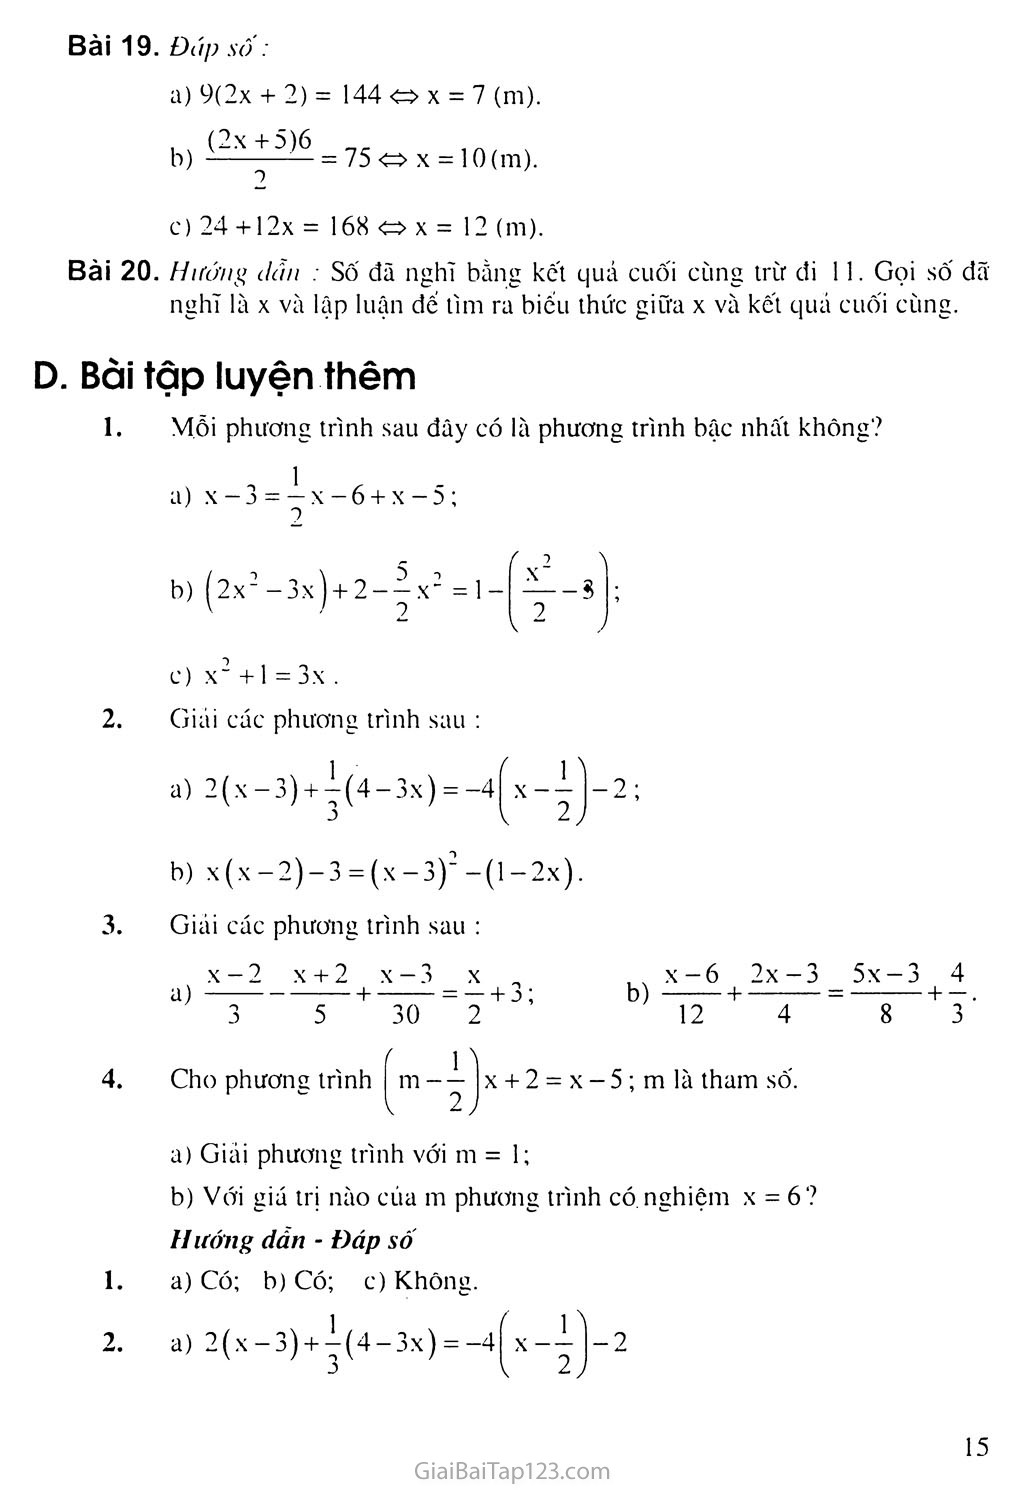 Bài 3. Phương trình đưa được về dạng ax + b = 0 trang 6